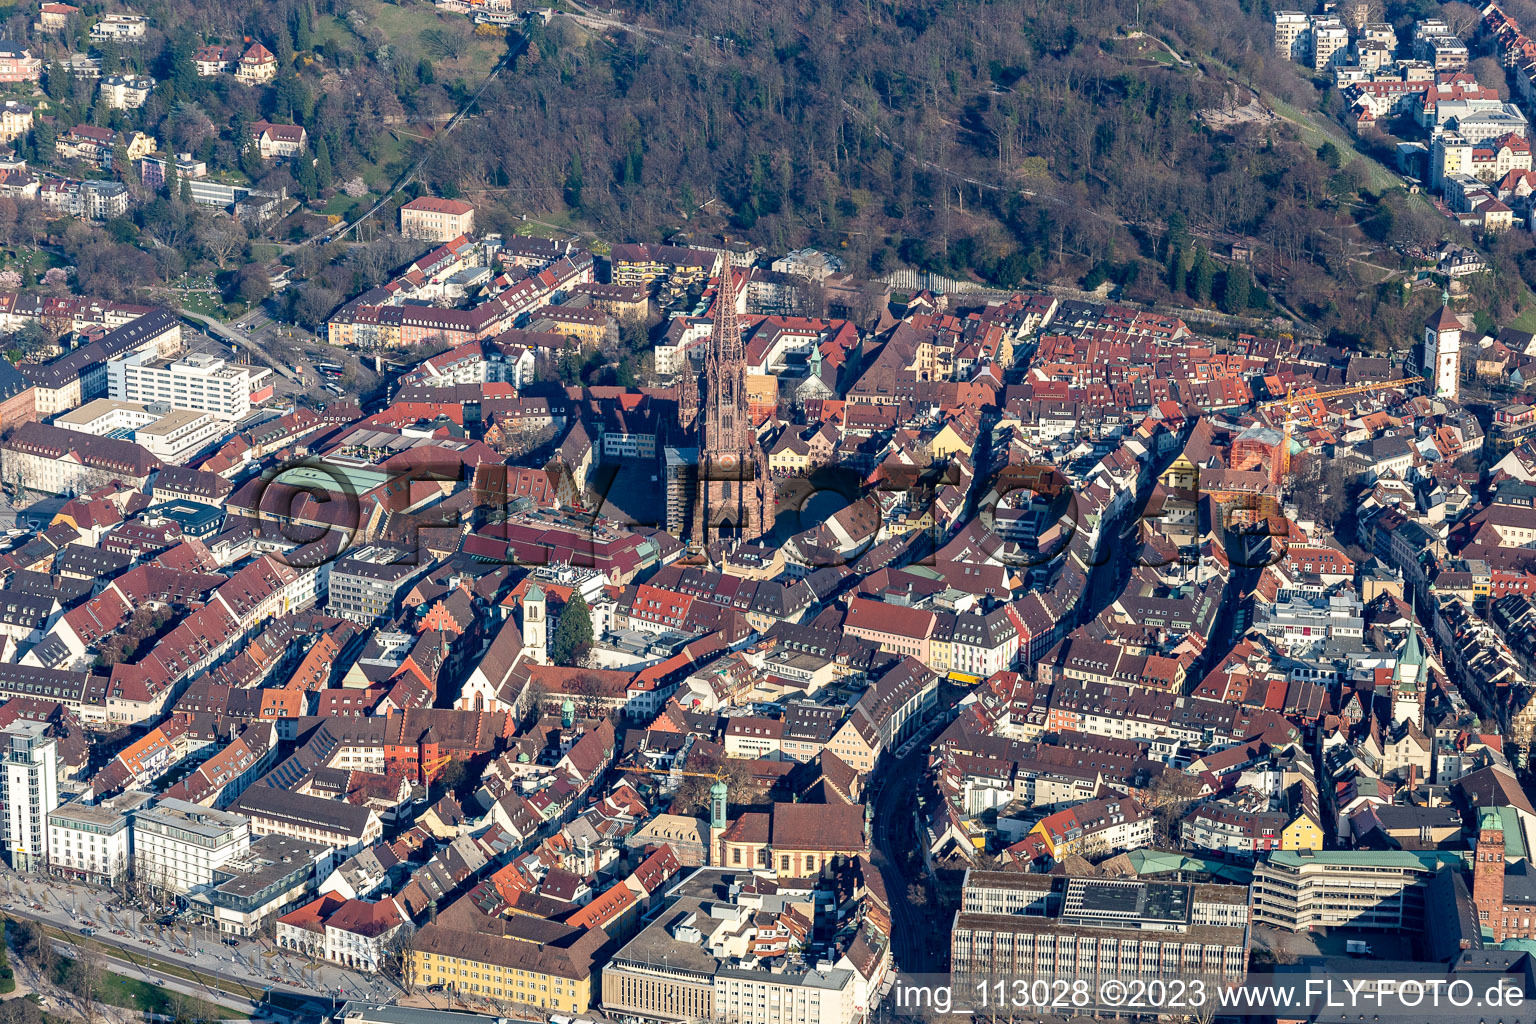 Altstadtbereich und Innenstadtzentrum in Freiburg im Breisgau im Bundesland Baden-Württemberg, Deutschland